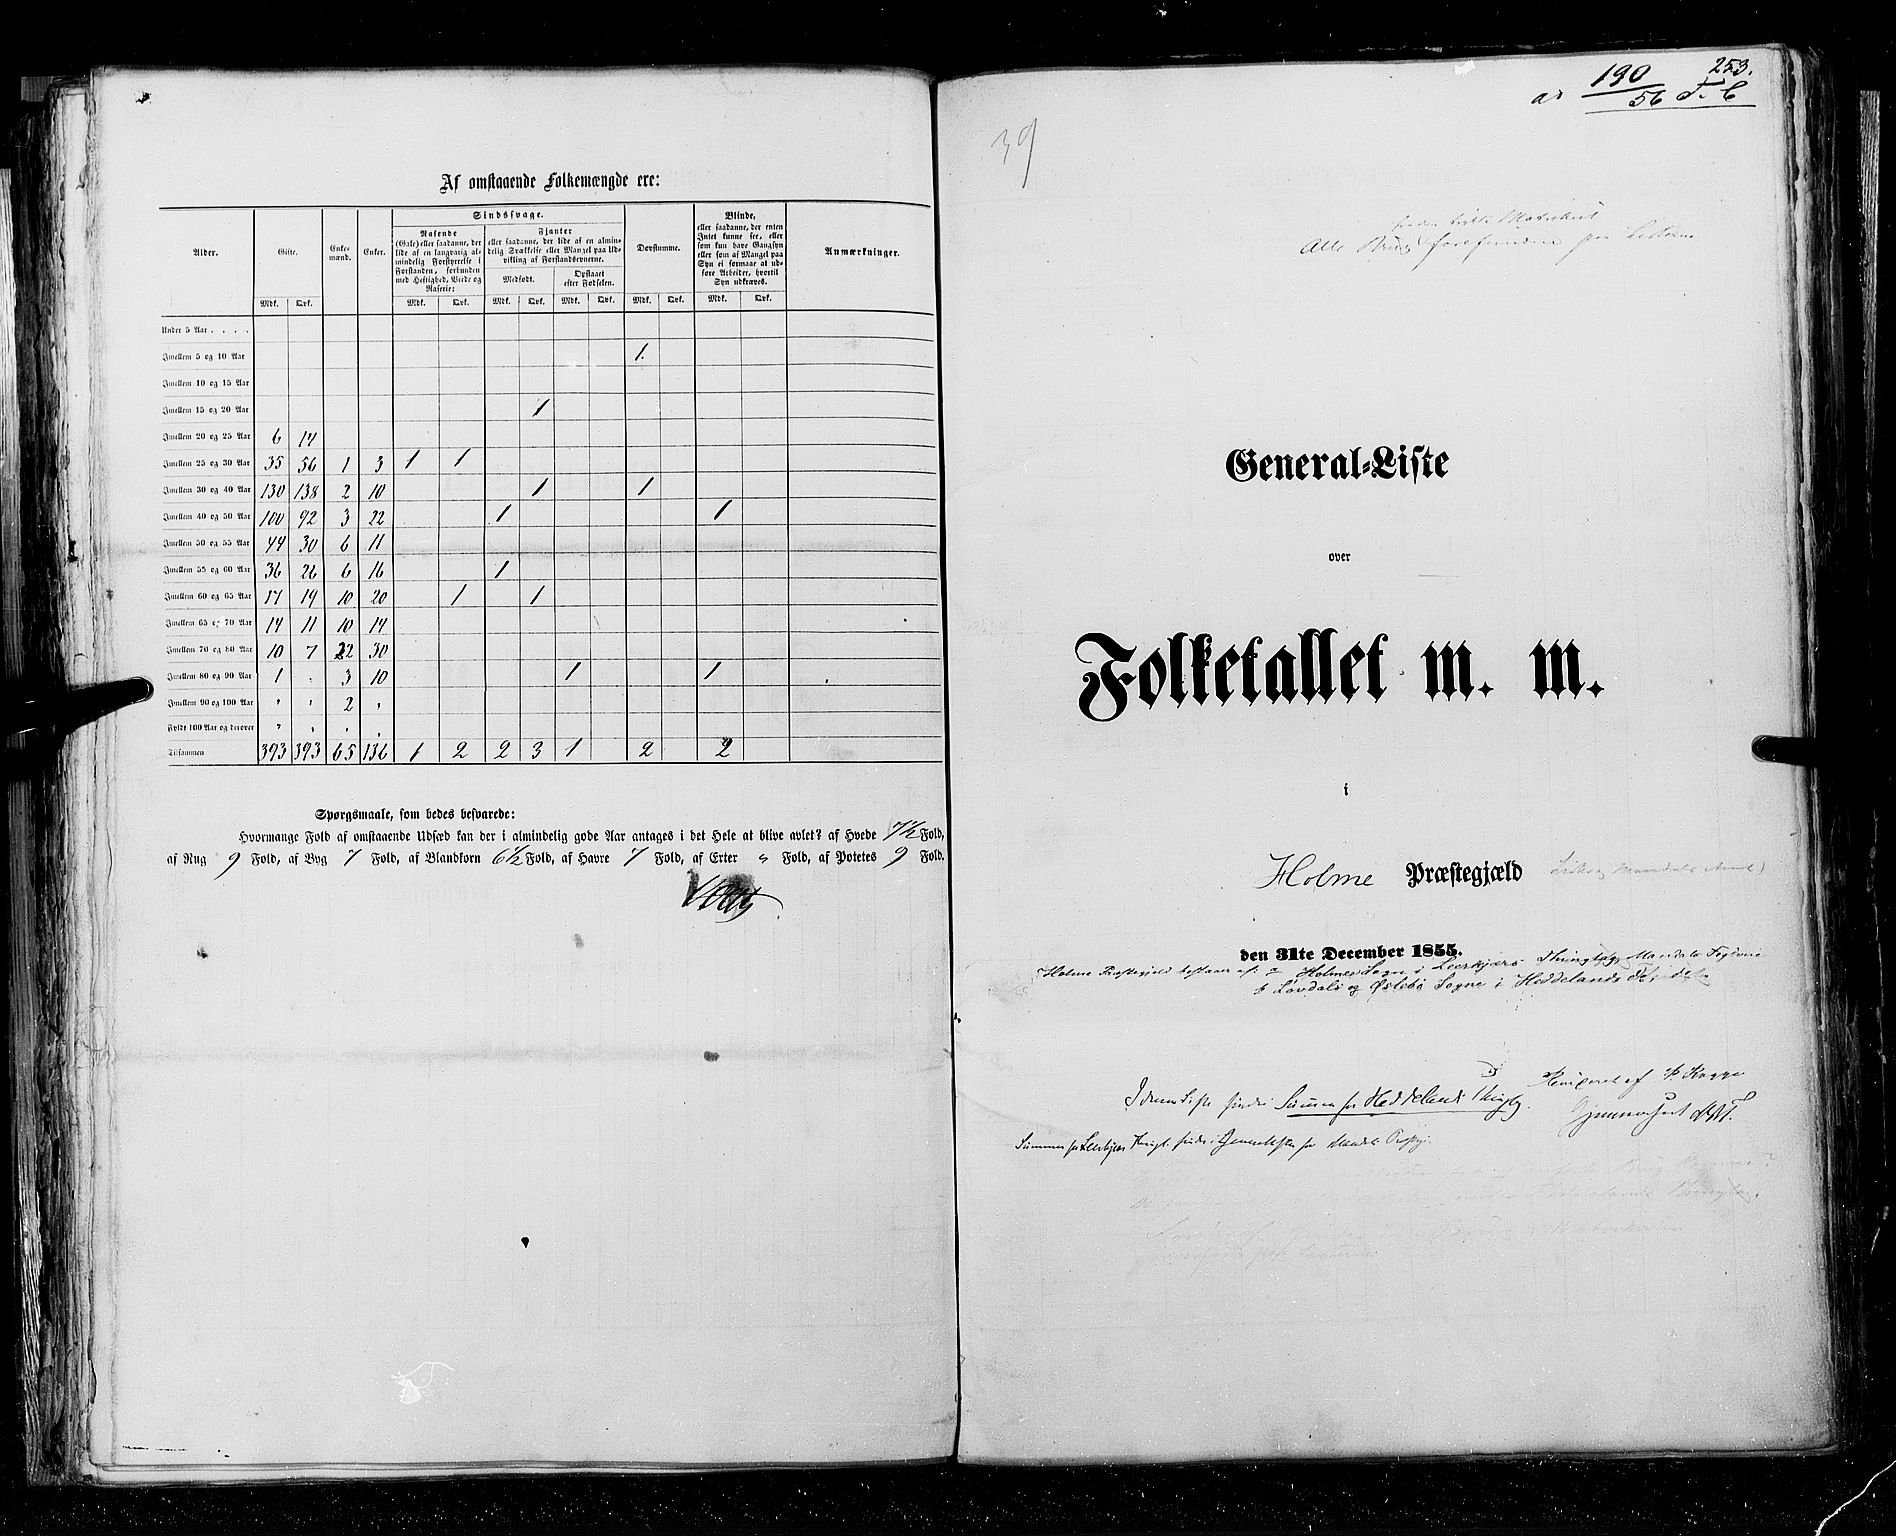 RA, Census 1855, vol. 3: Bratsberg amt, Nedenes amt og Lister og Mandal amt, 1855, p. 253